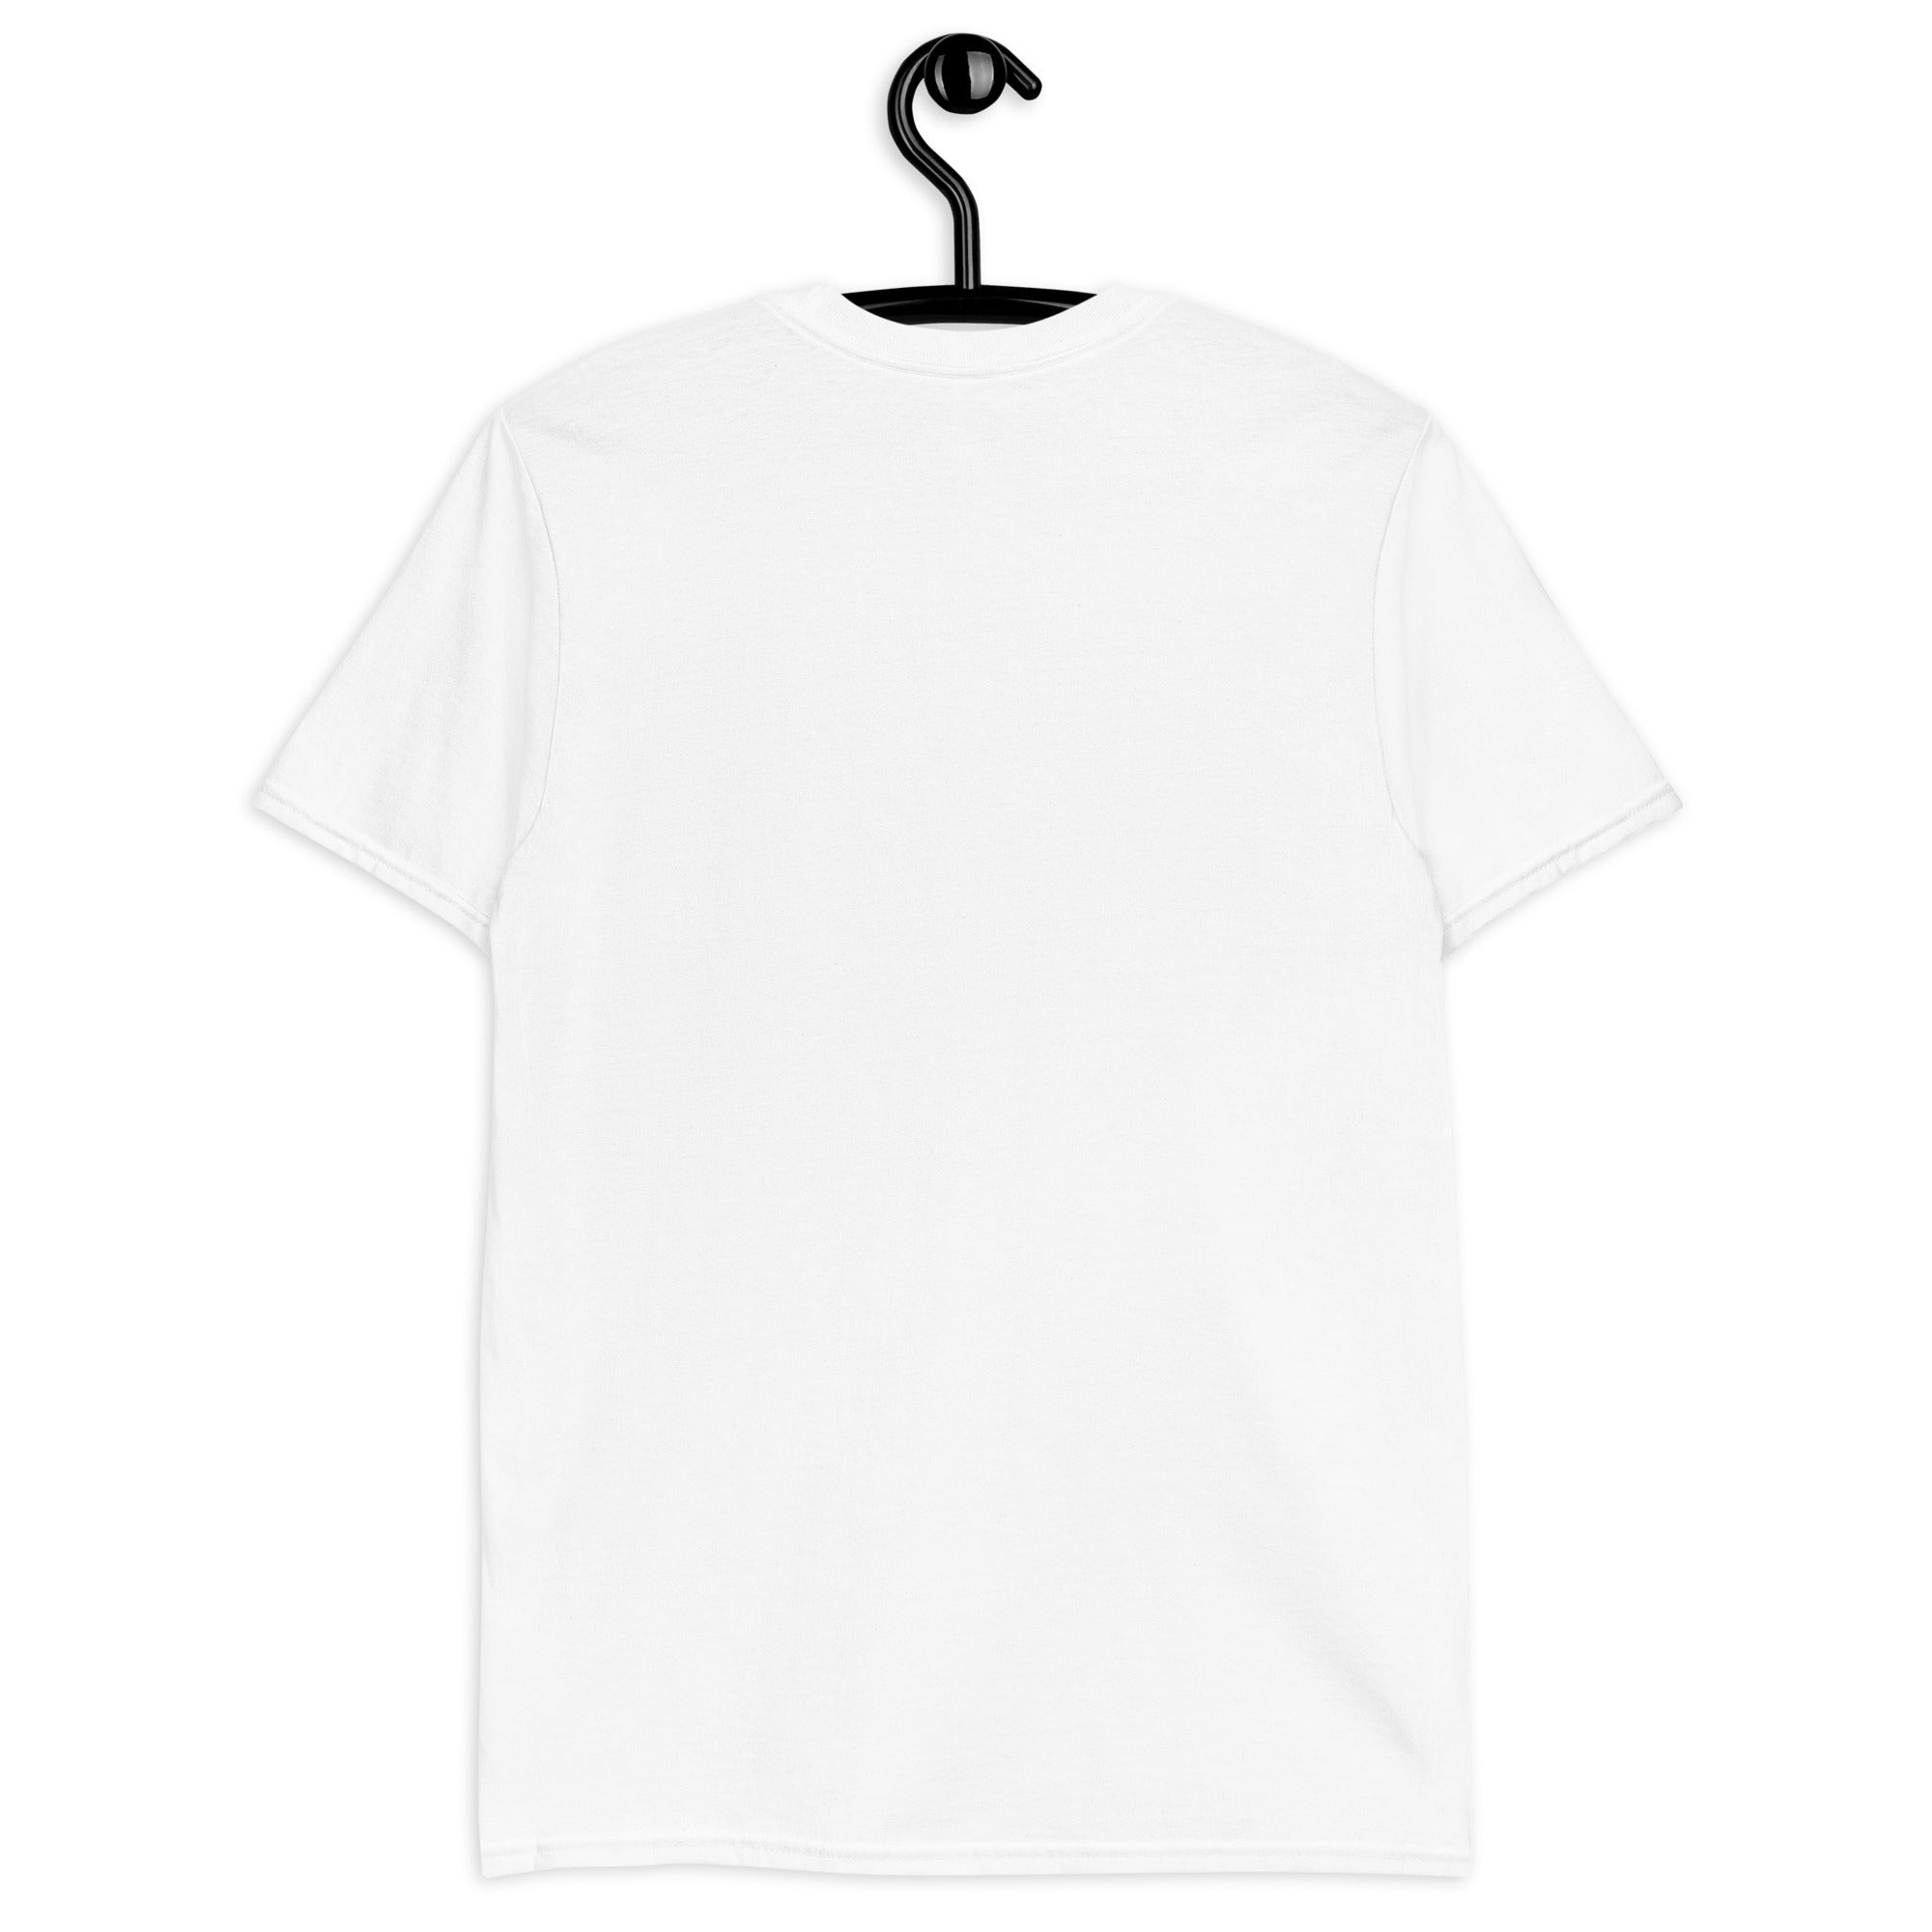 Nererchy T-paita valkoinen